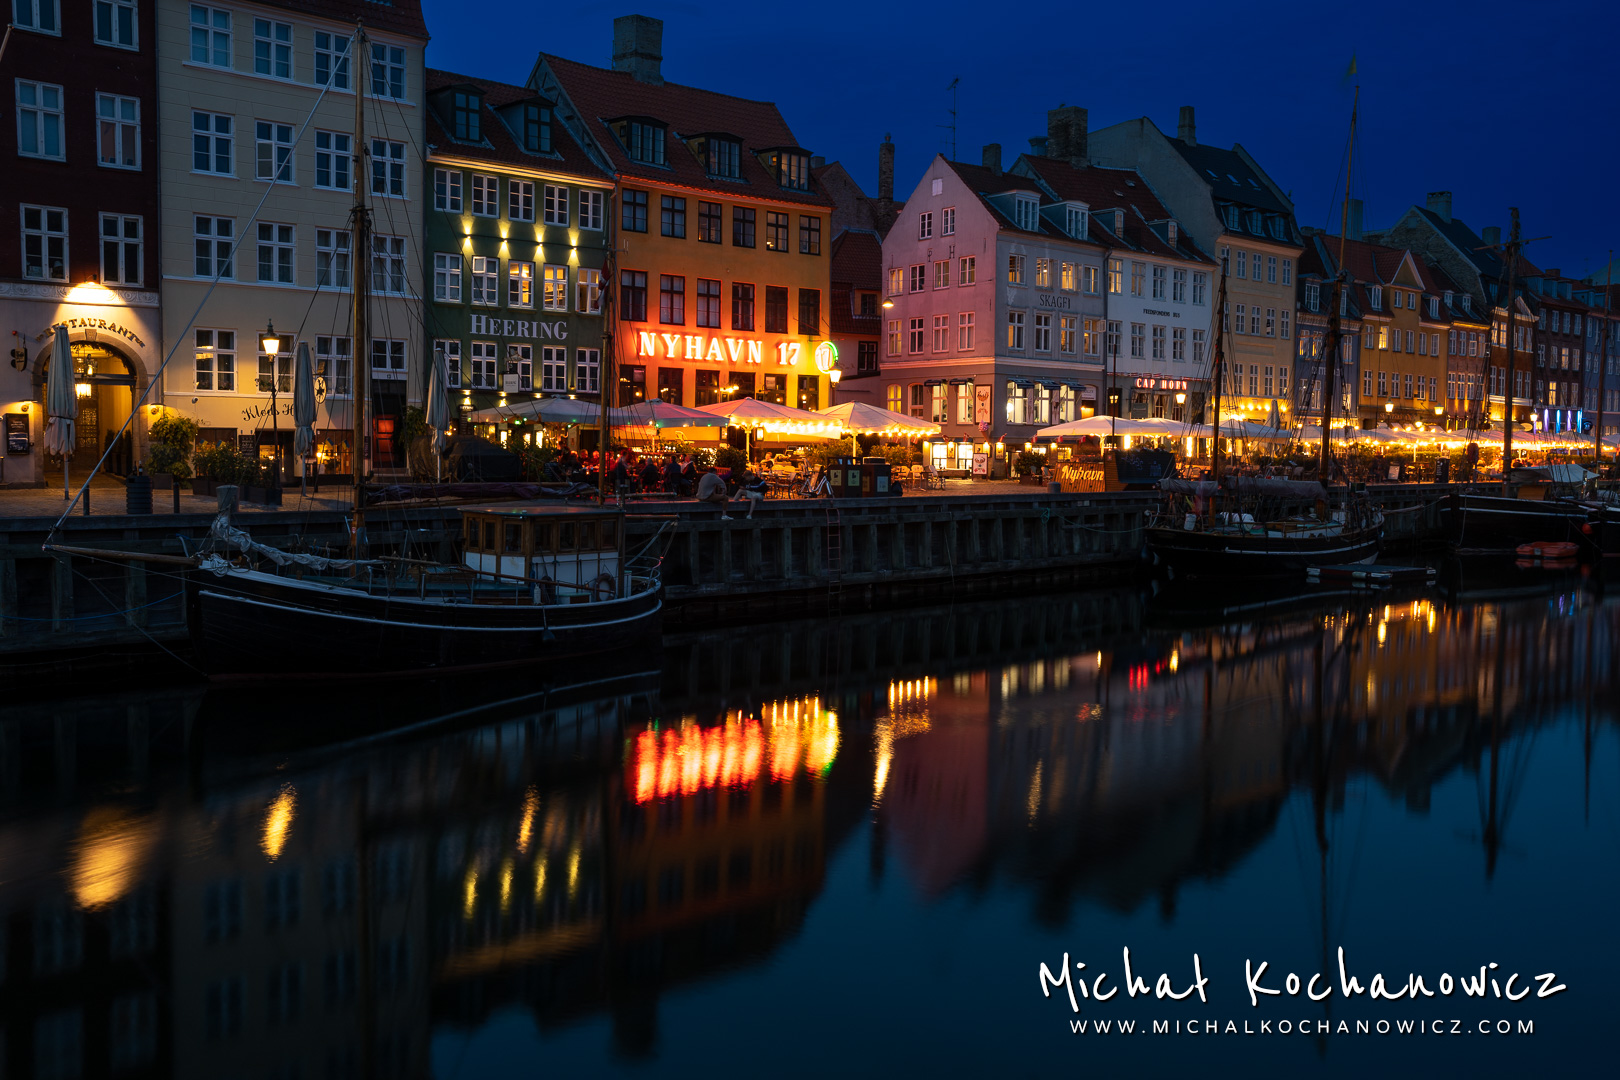 Night view of Nyhavn in Copenhagen